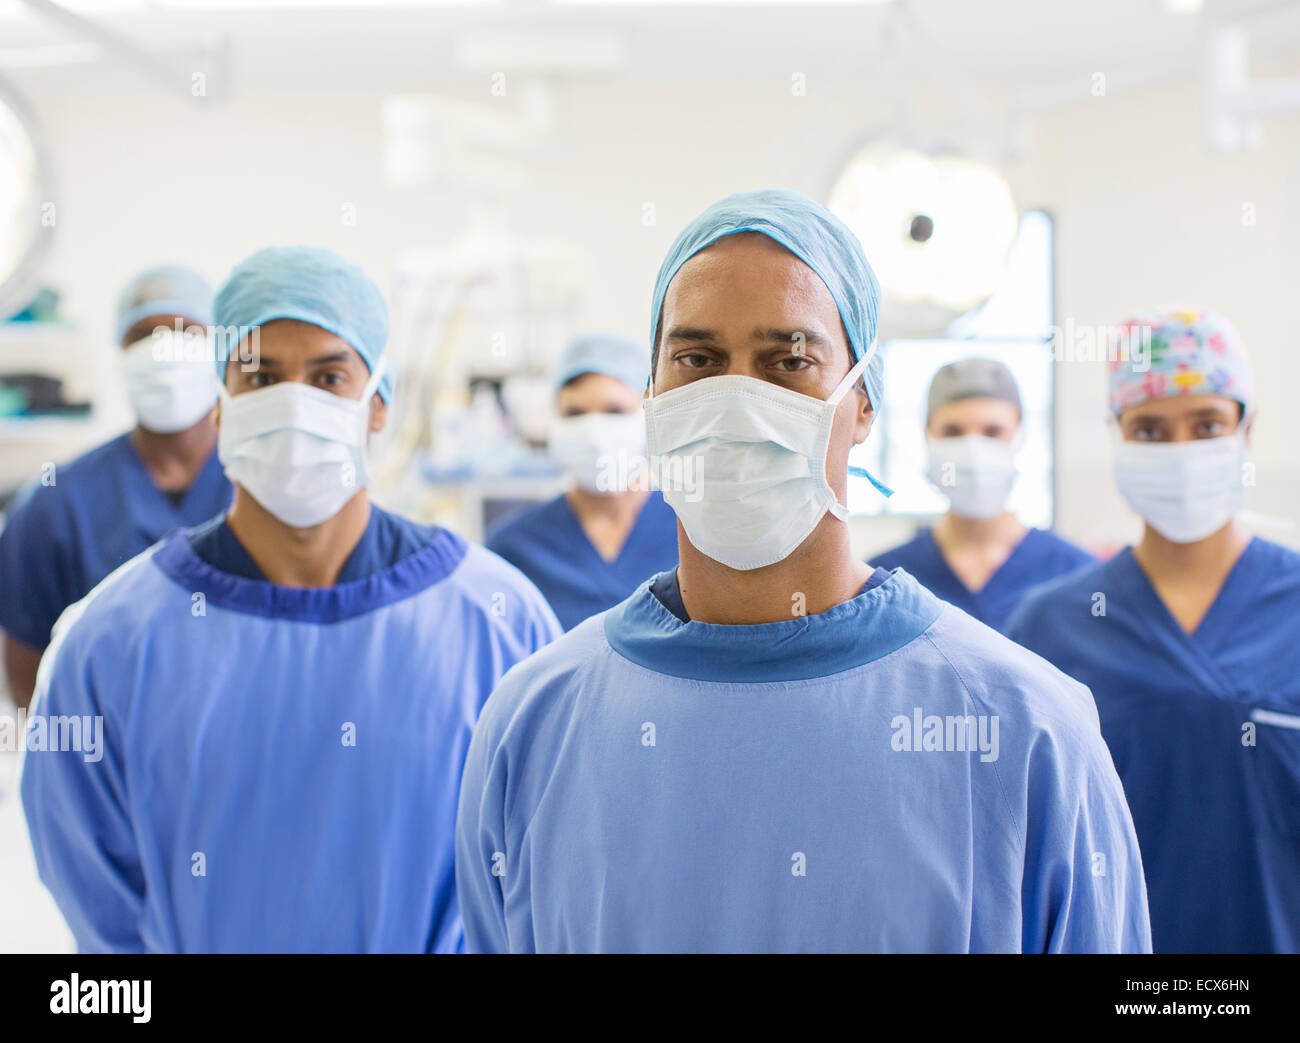 Ritratto di gruppo del team di chirurghi mascherato in ospedale Foto Stock